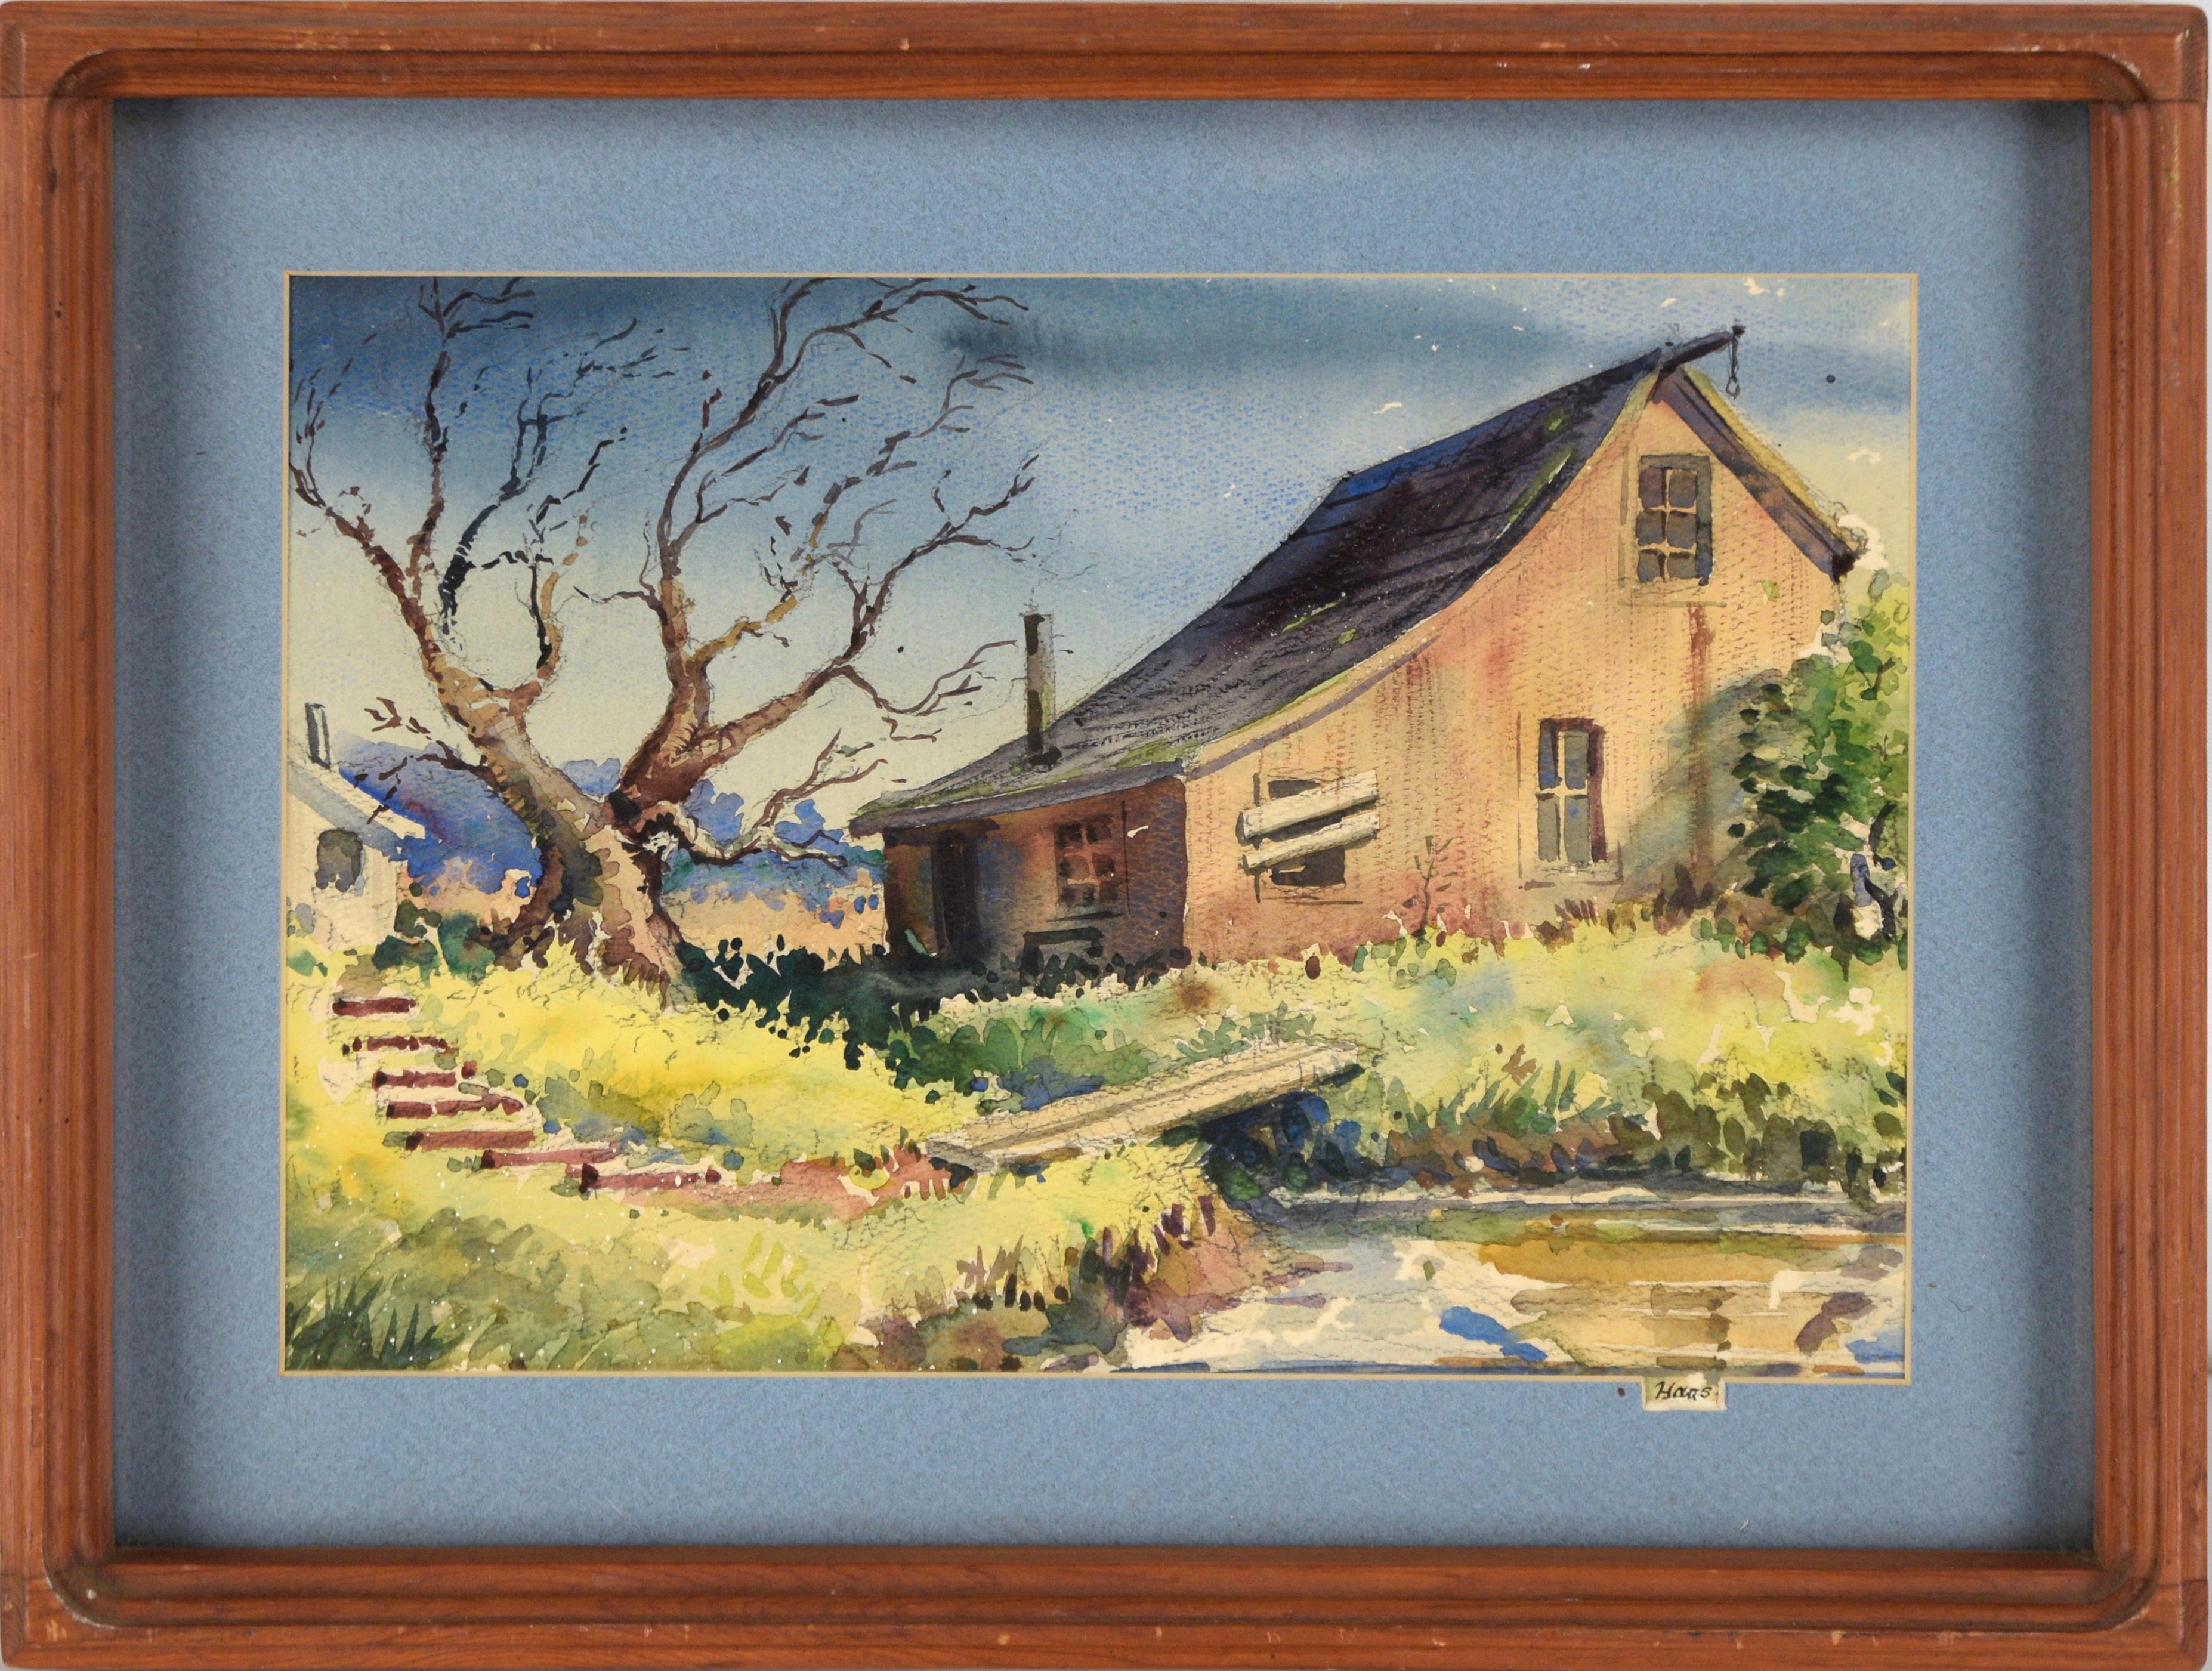 Edwin Haas Landscape Art - The Old Barn - Farmhouse Landscape in Watercolor on Paper